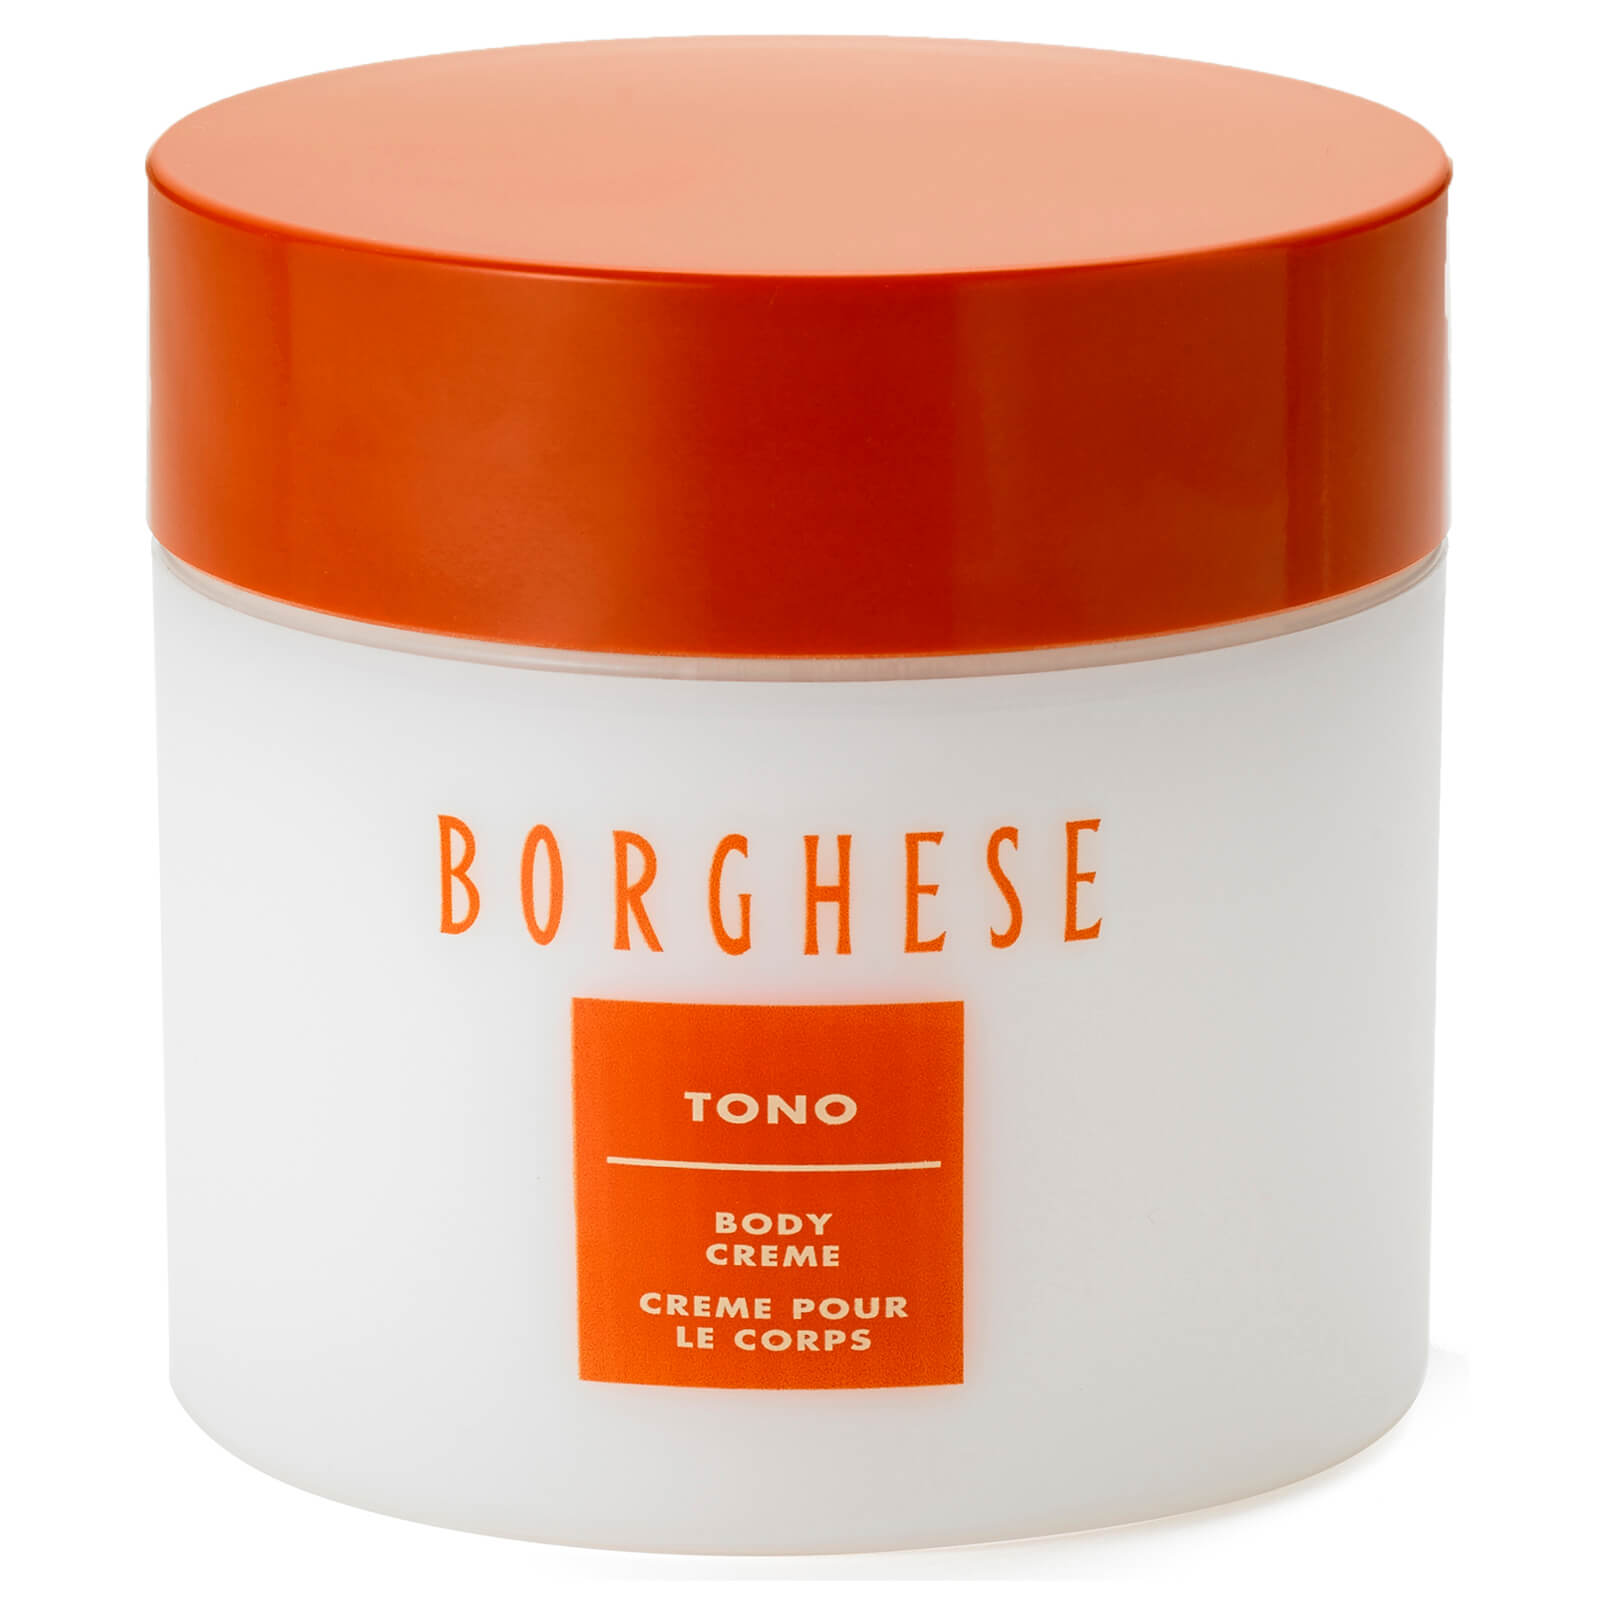 Crema corporal Tono de Borghese (207 ml)